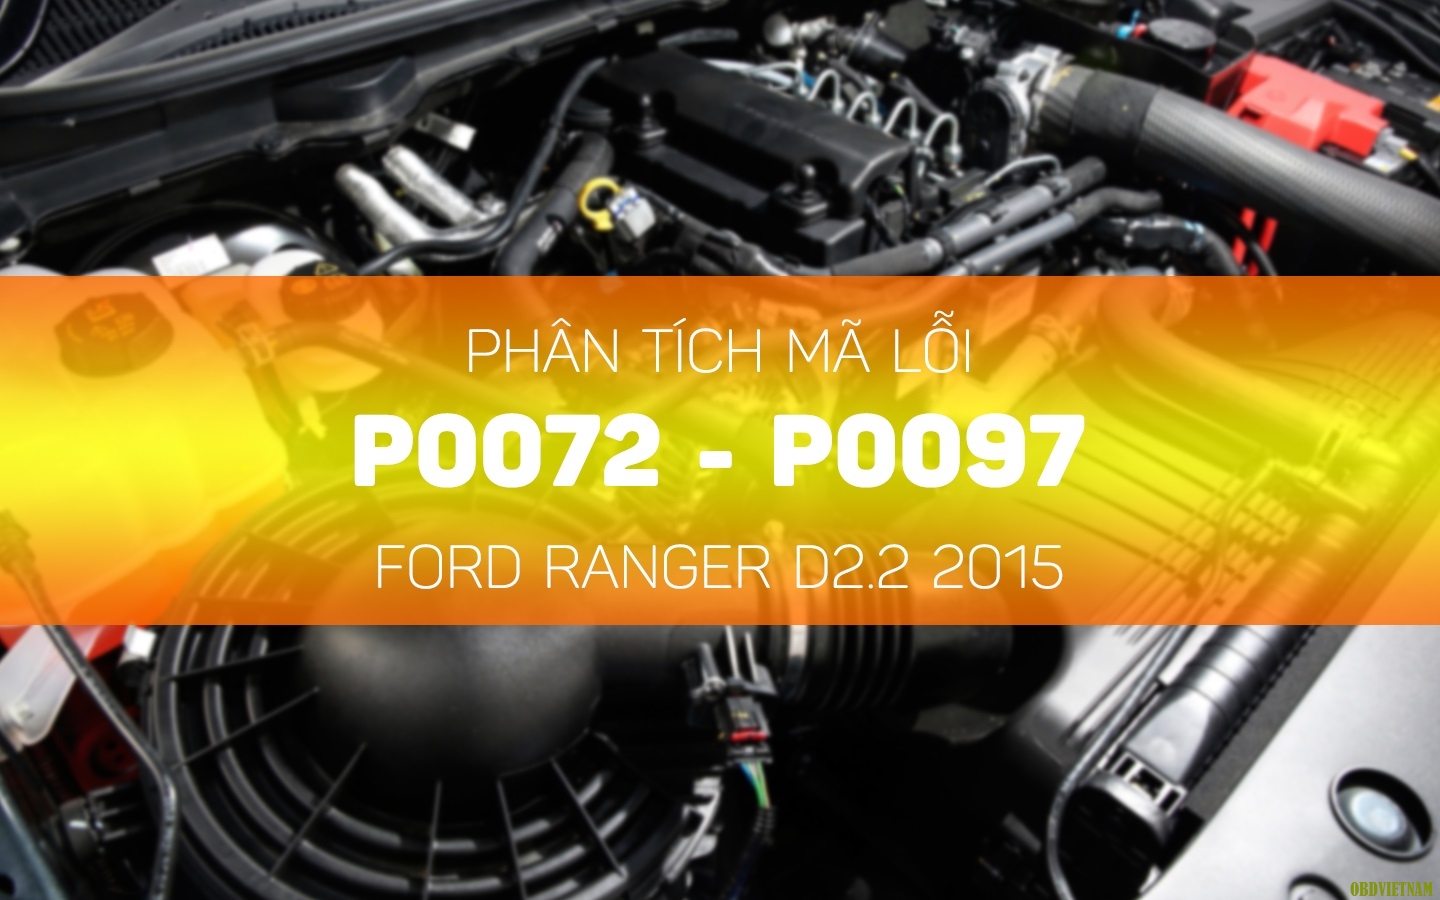 Phân tích mã lỗi p0072 - P0097 Xe Ford Ranger